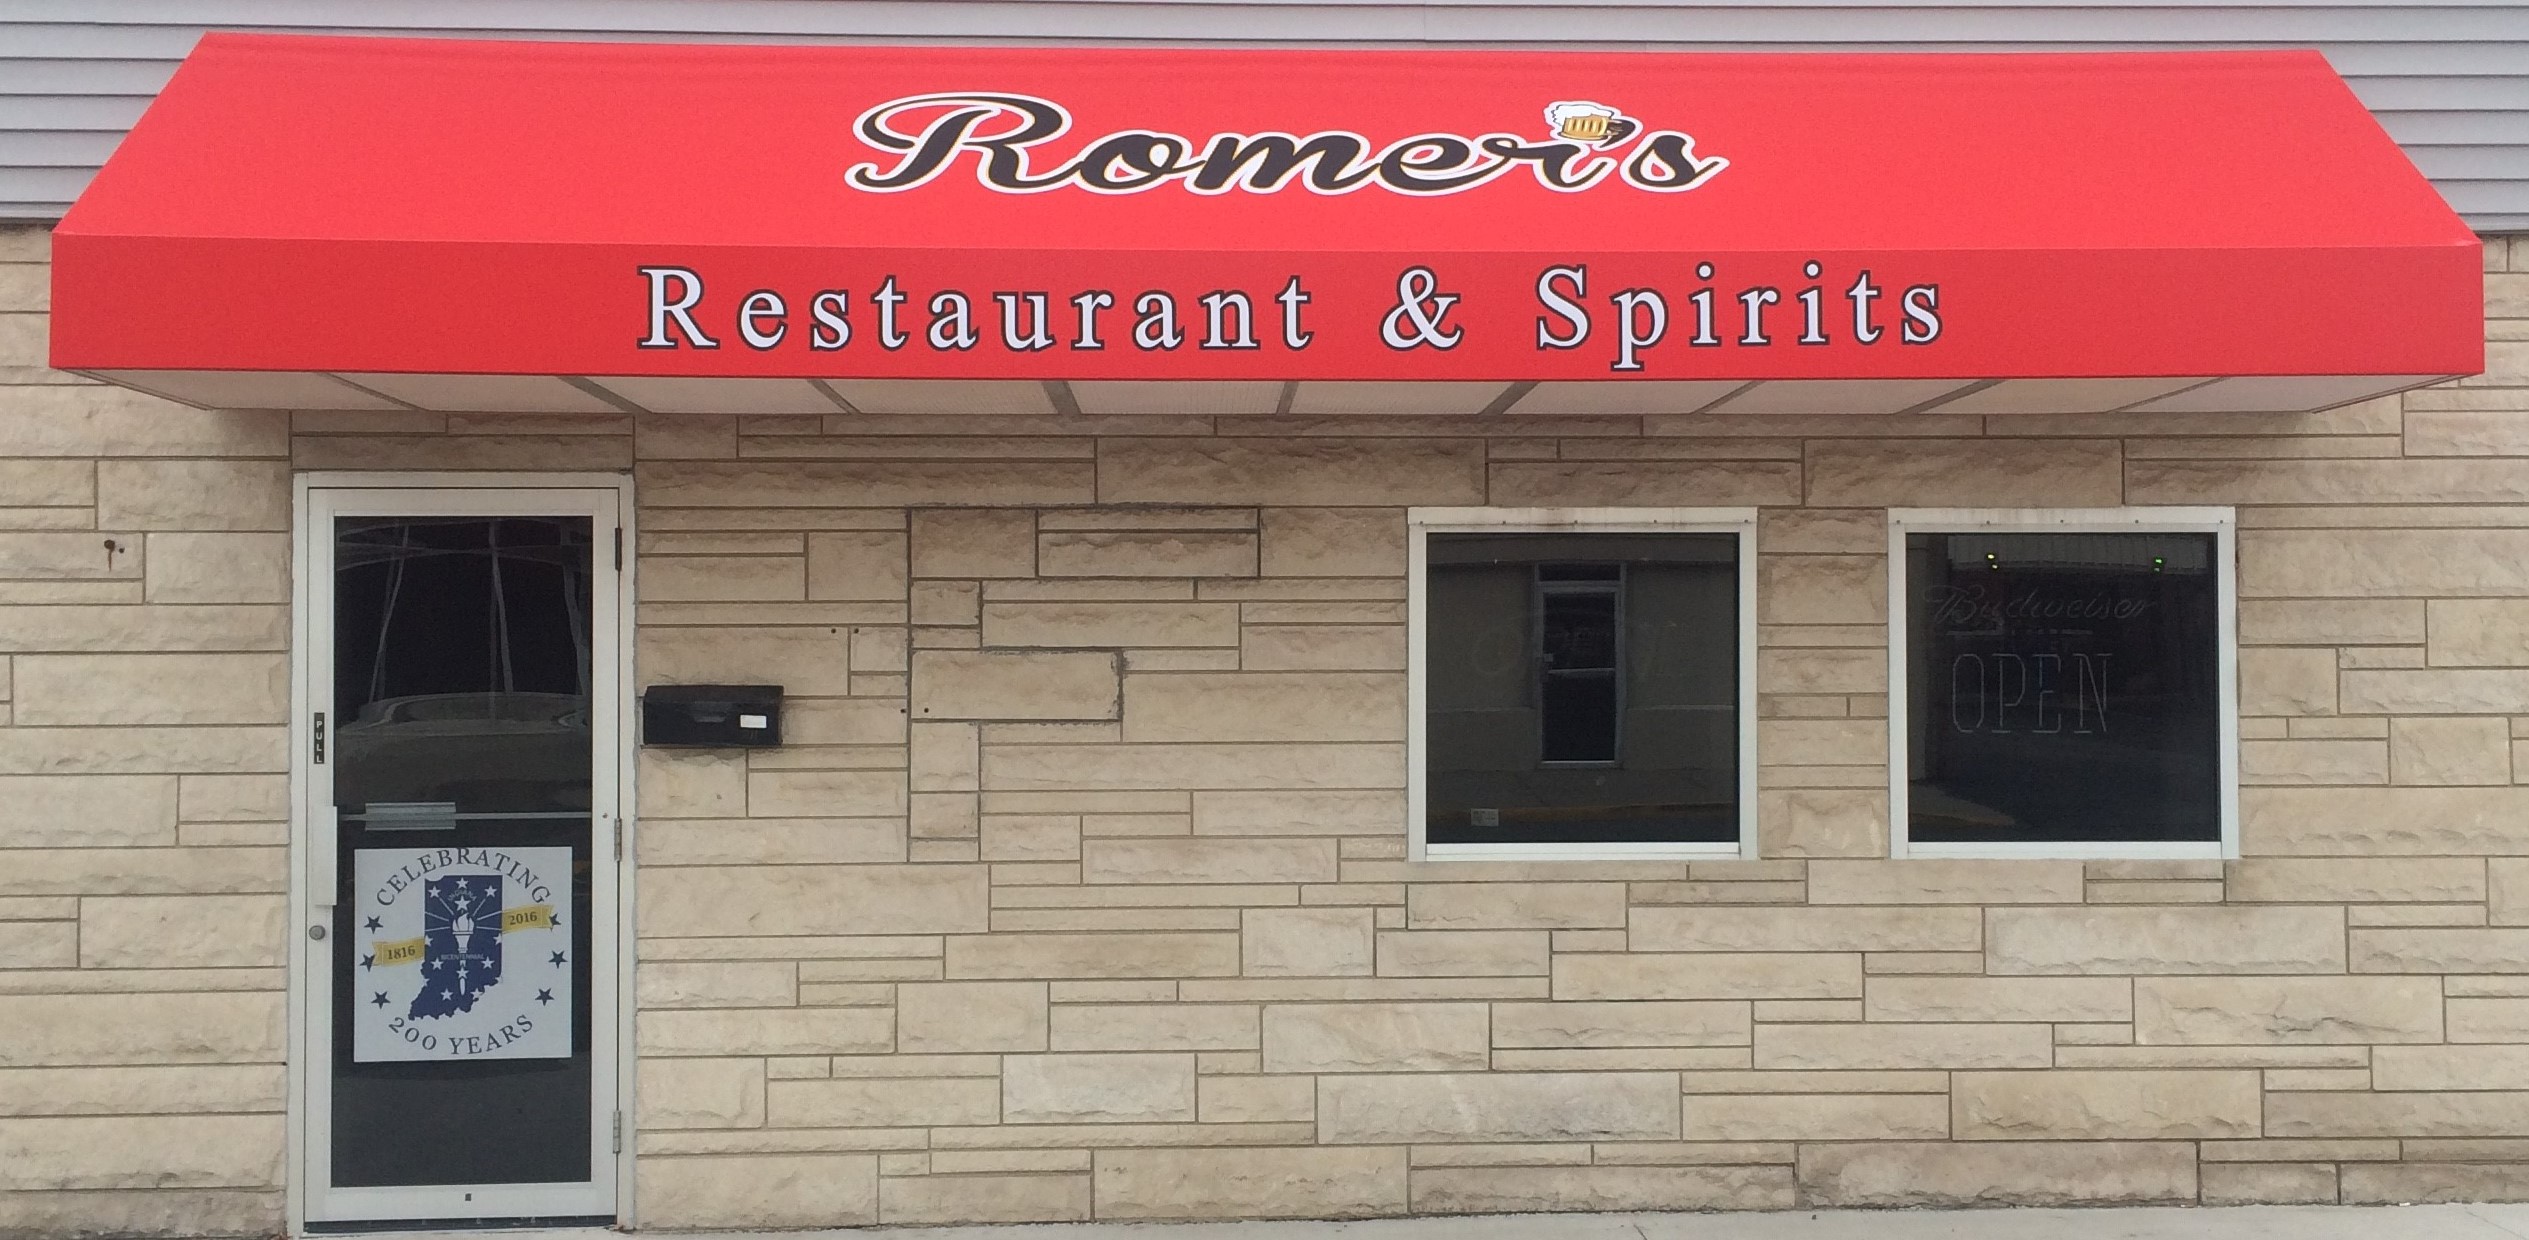 Romer's Restaurant & Spirits storefront